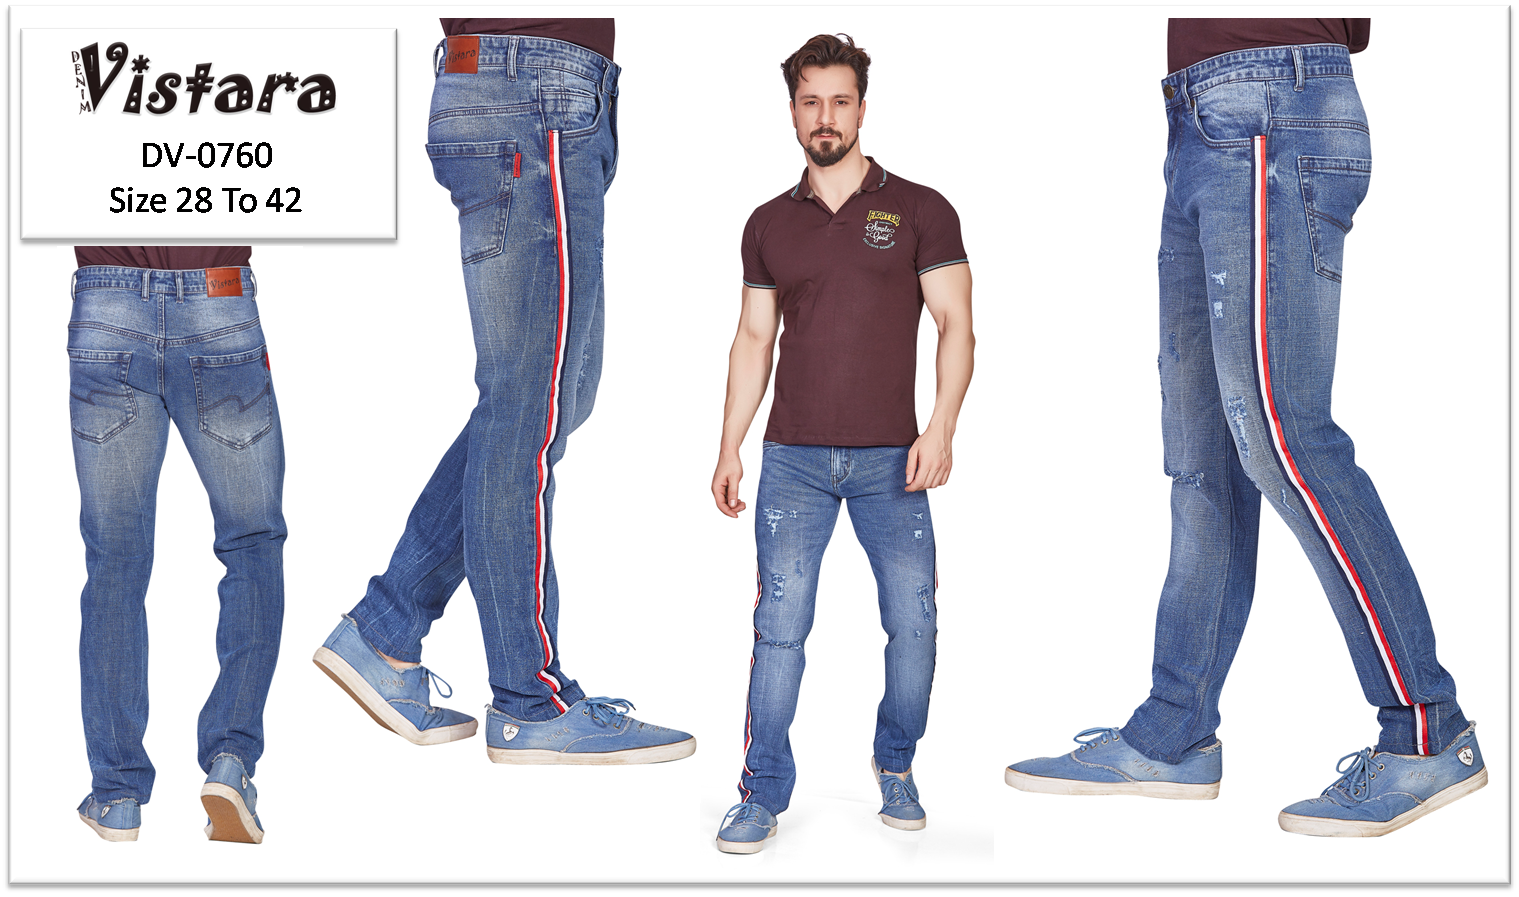 Best Wholesale Supplier to Buy Denim Jeans – Denim Vistara